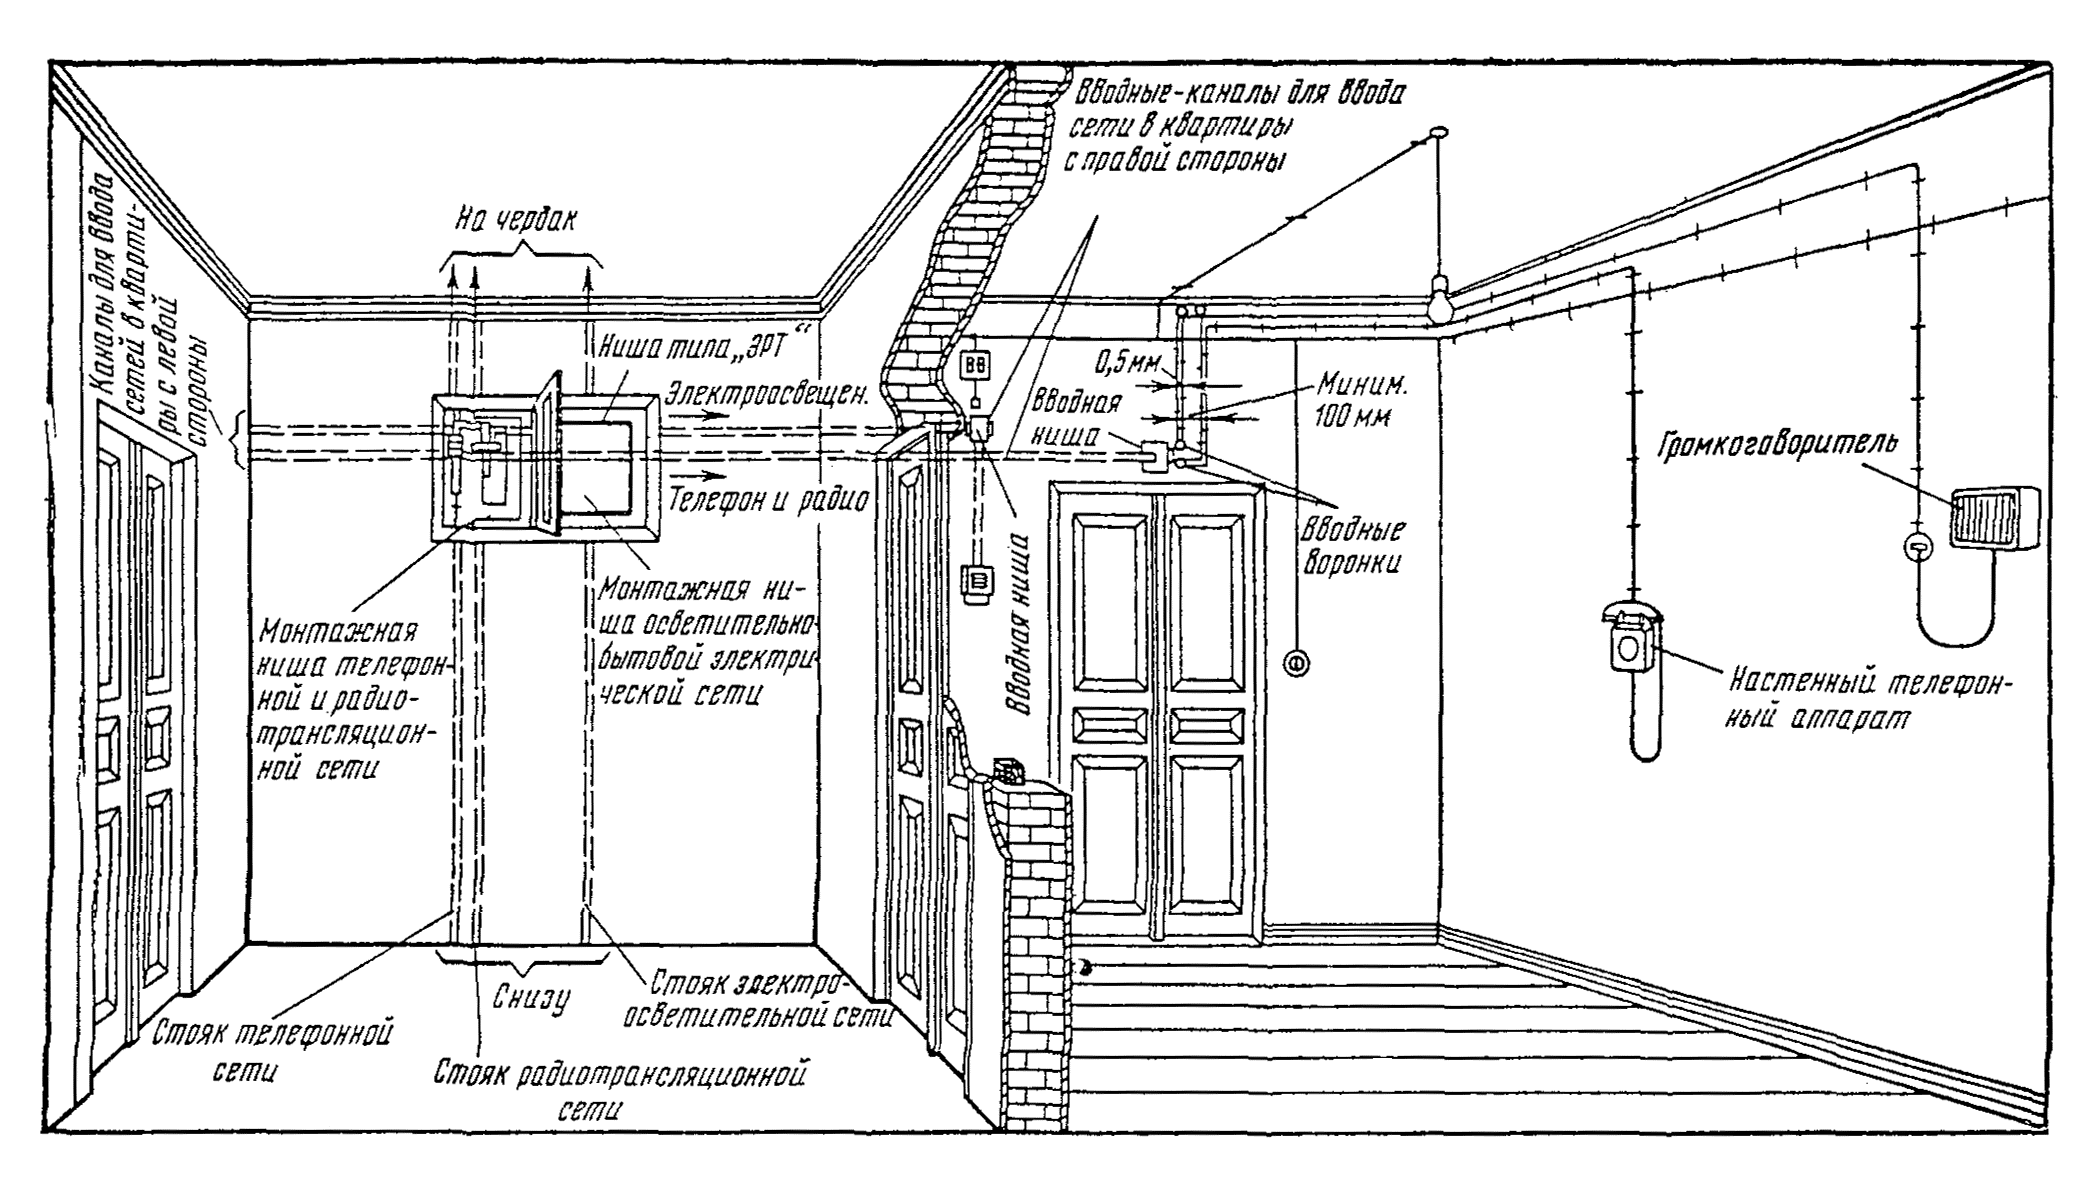 Проводка в домах 1967 года 5 этажей. типовые планировки квартир чтв, ап.  2011